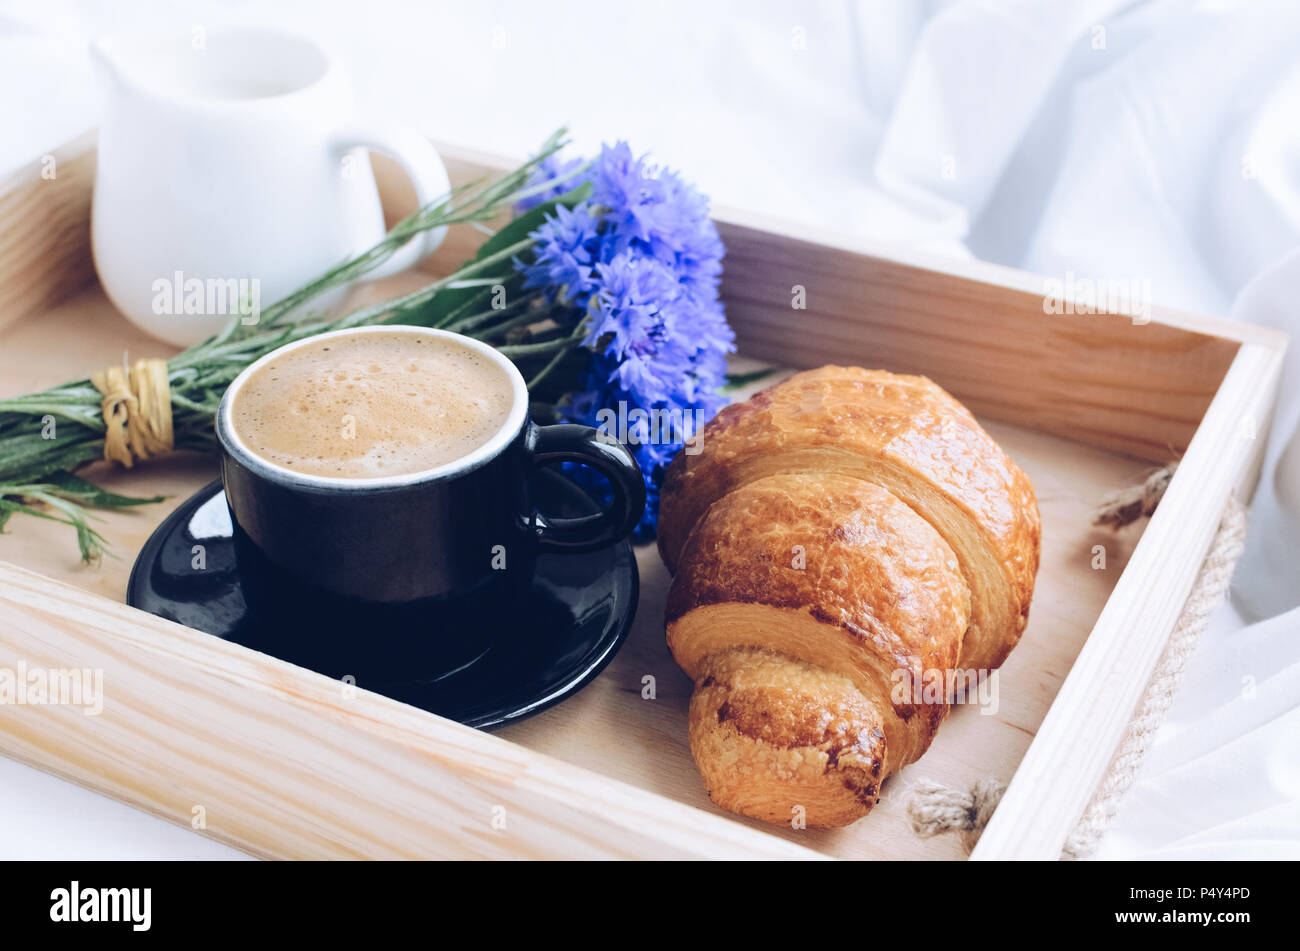 De l'été romantique petit-déjeuner au lit, plateau avec croissant frais, tasse de café espresso avec lait et bouquet de bleuets bleu. Bon matin concept. E Banque D'Images